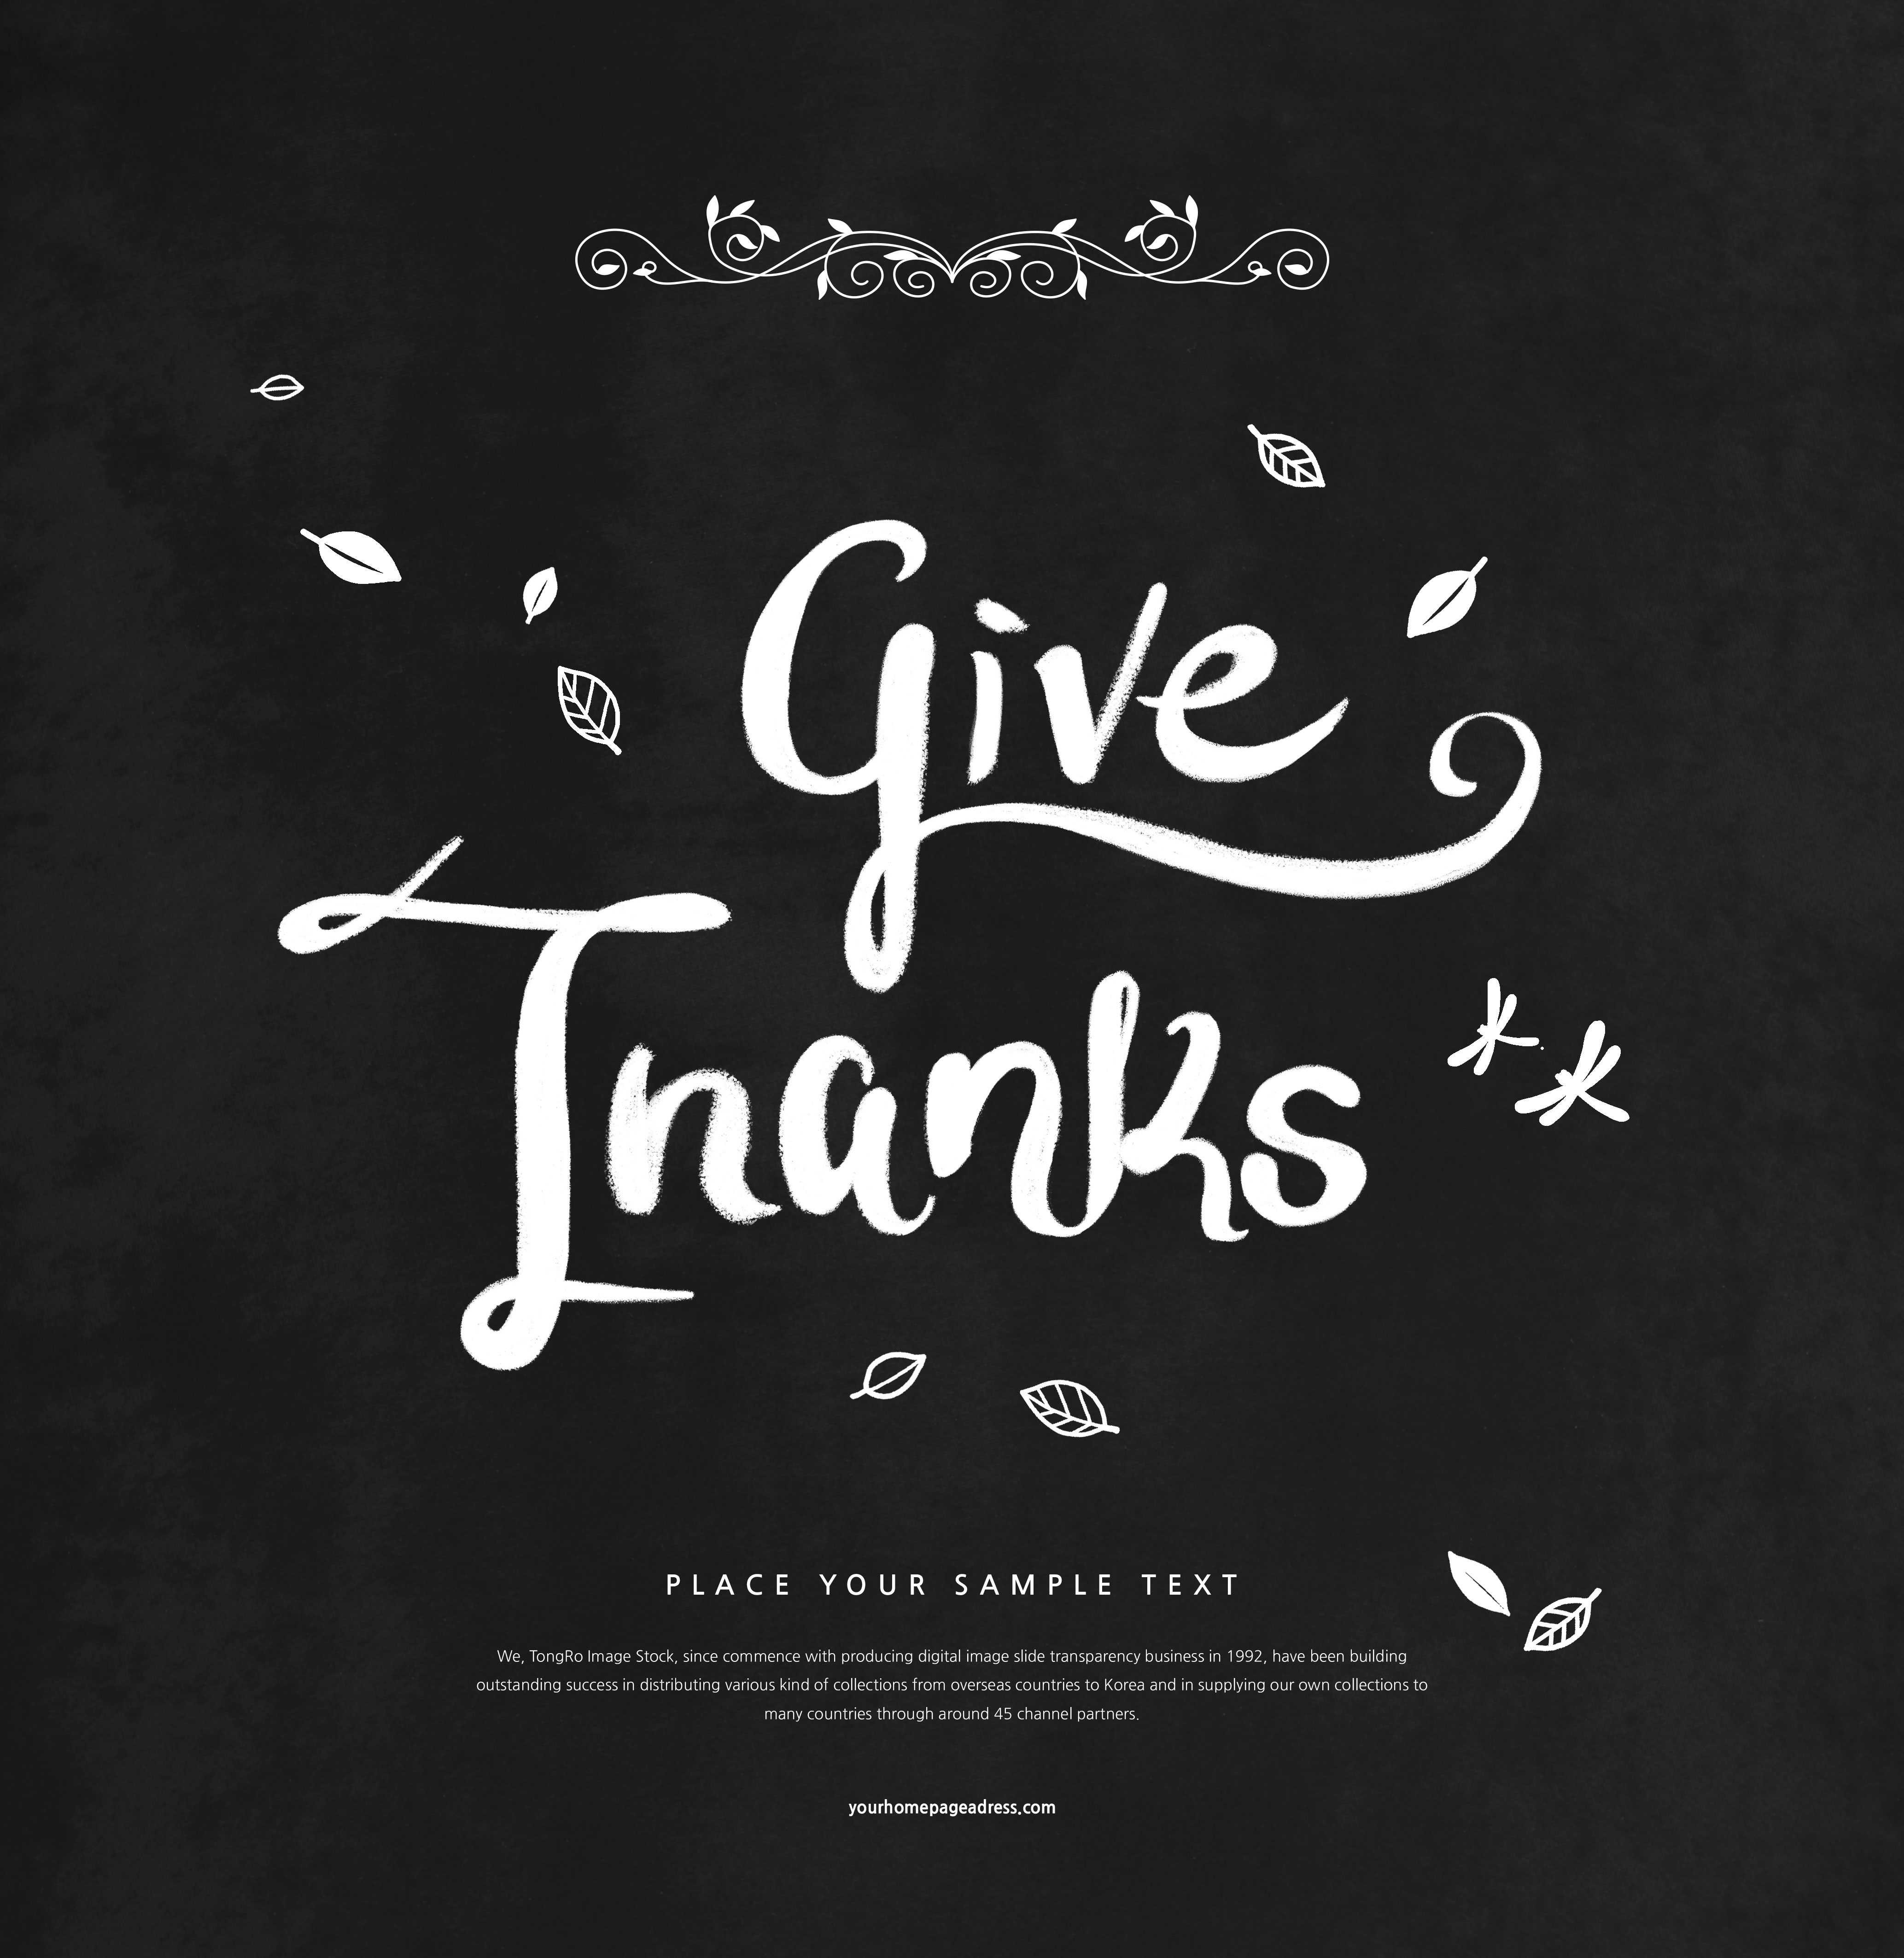 黑白风格感恩节主题海报背景素材插图